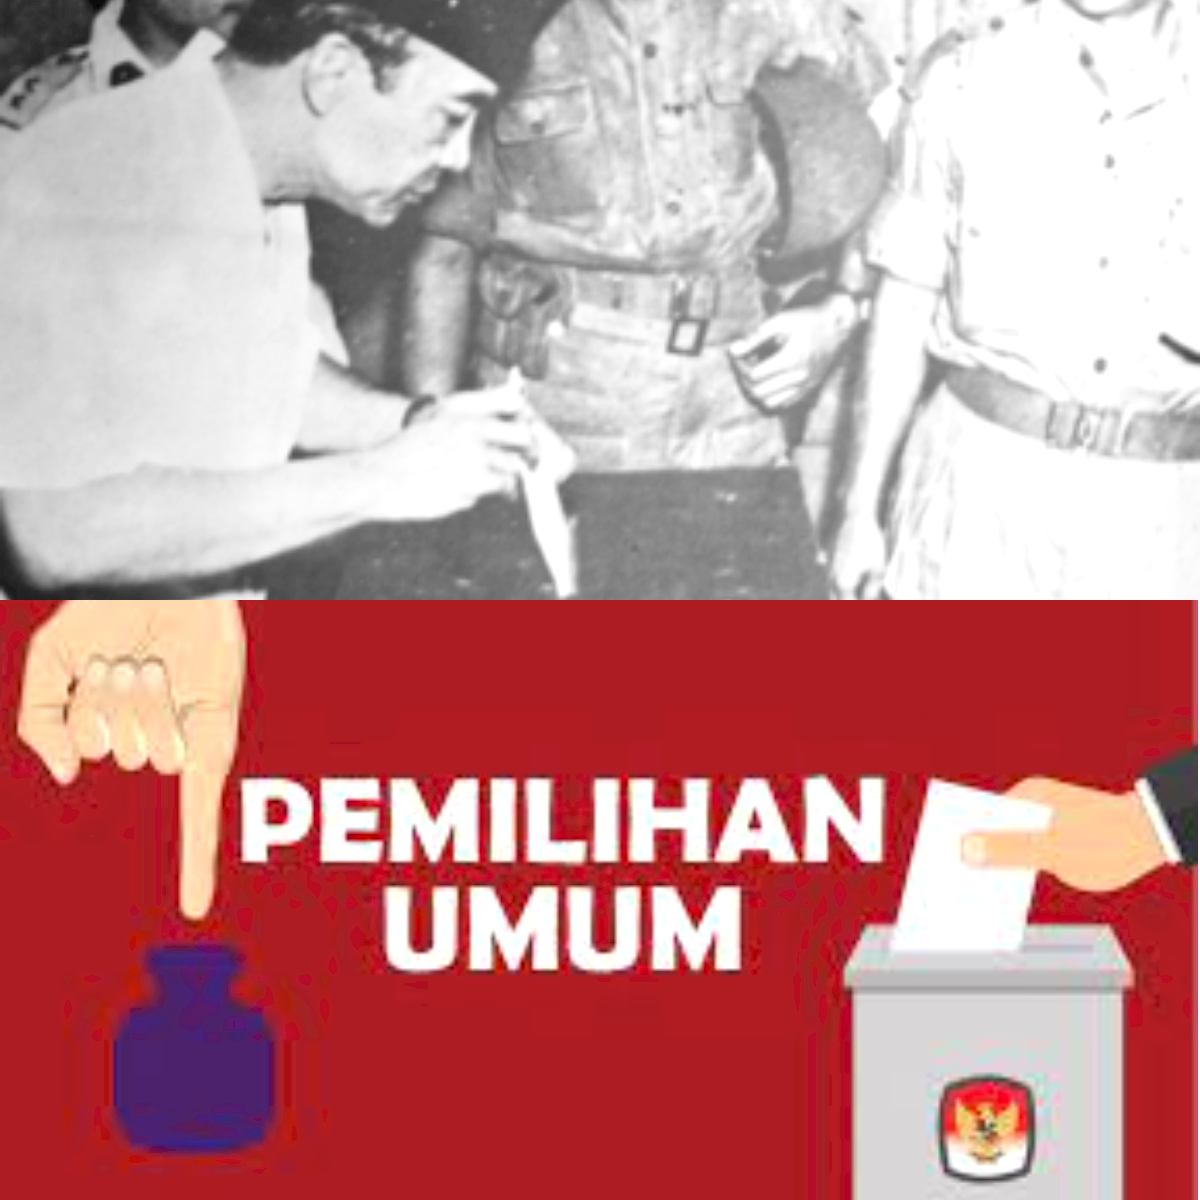 Memahami Perjalanan Demokrasi Indonesia, Inilah 7 Kisah Sejarah Pemilu yang Menginspirasi!